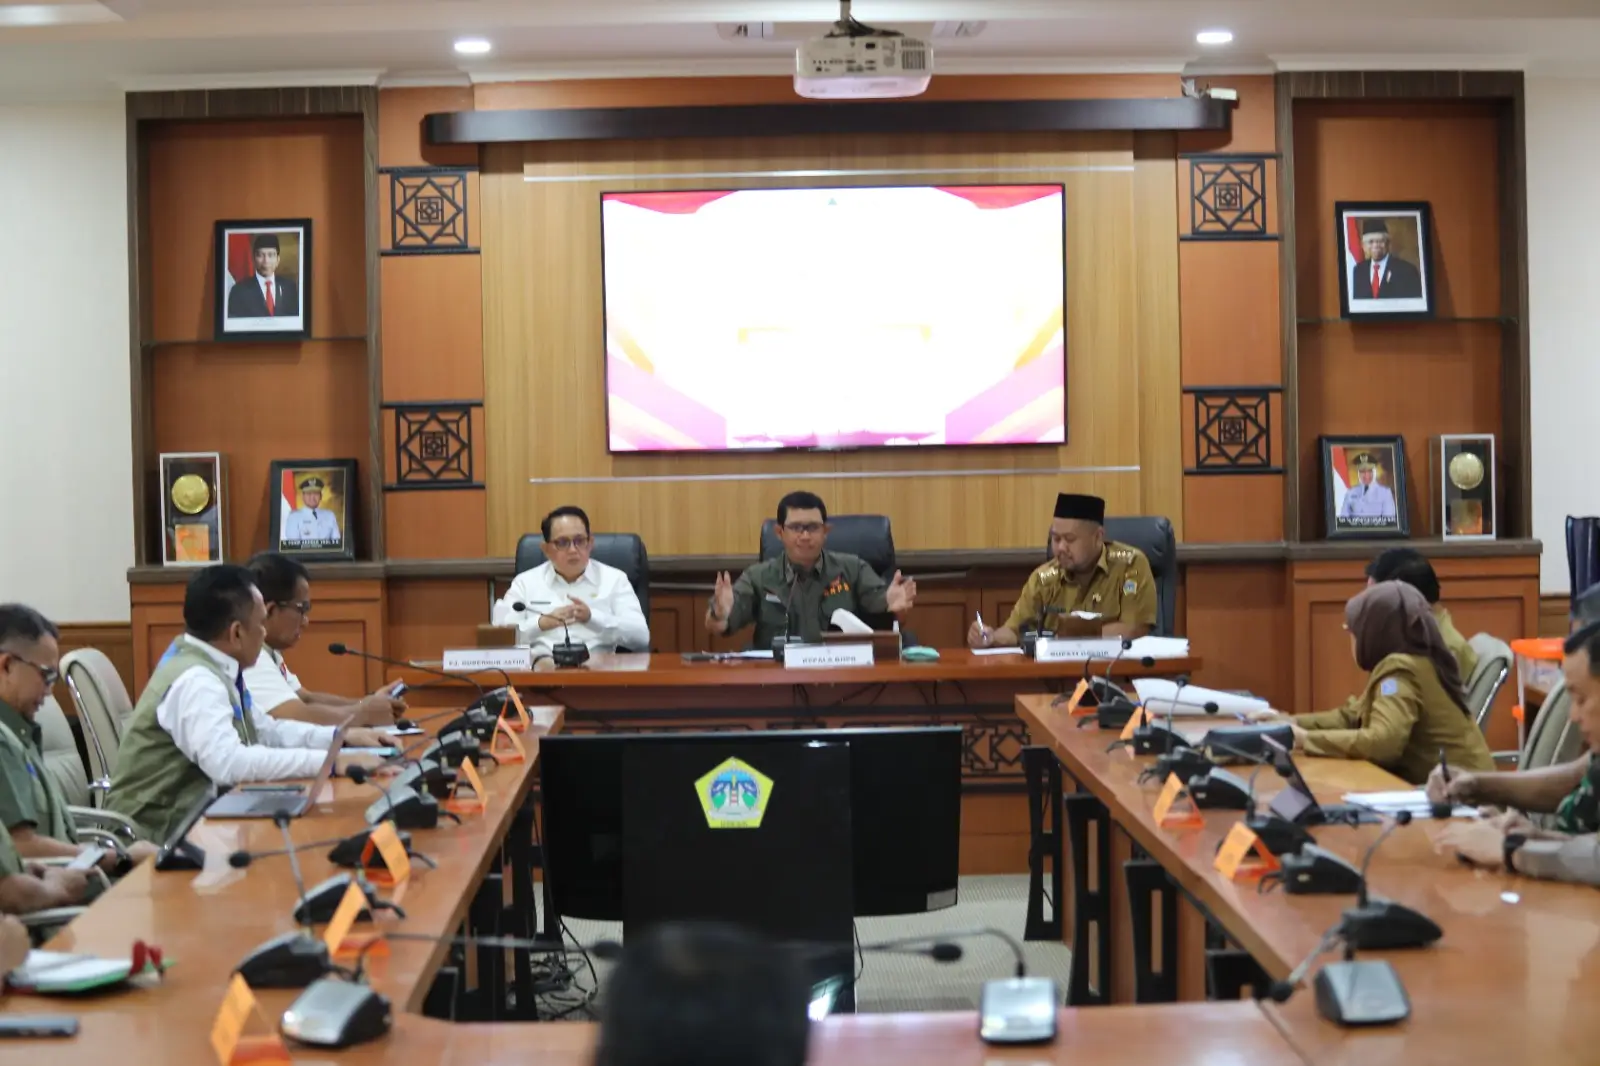 Kepala BNPB Letjen TNI Suharyanto, S.Sos., M.M (kemeja dan rompi hijau) saat memberikan arahan saat Rapat Koordinasi Penanganan Darurat Gempa di Kantor Bupati Gresik, Jawa Timur pada Senin (25/3).